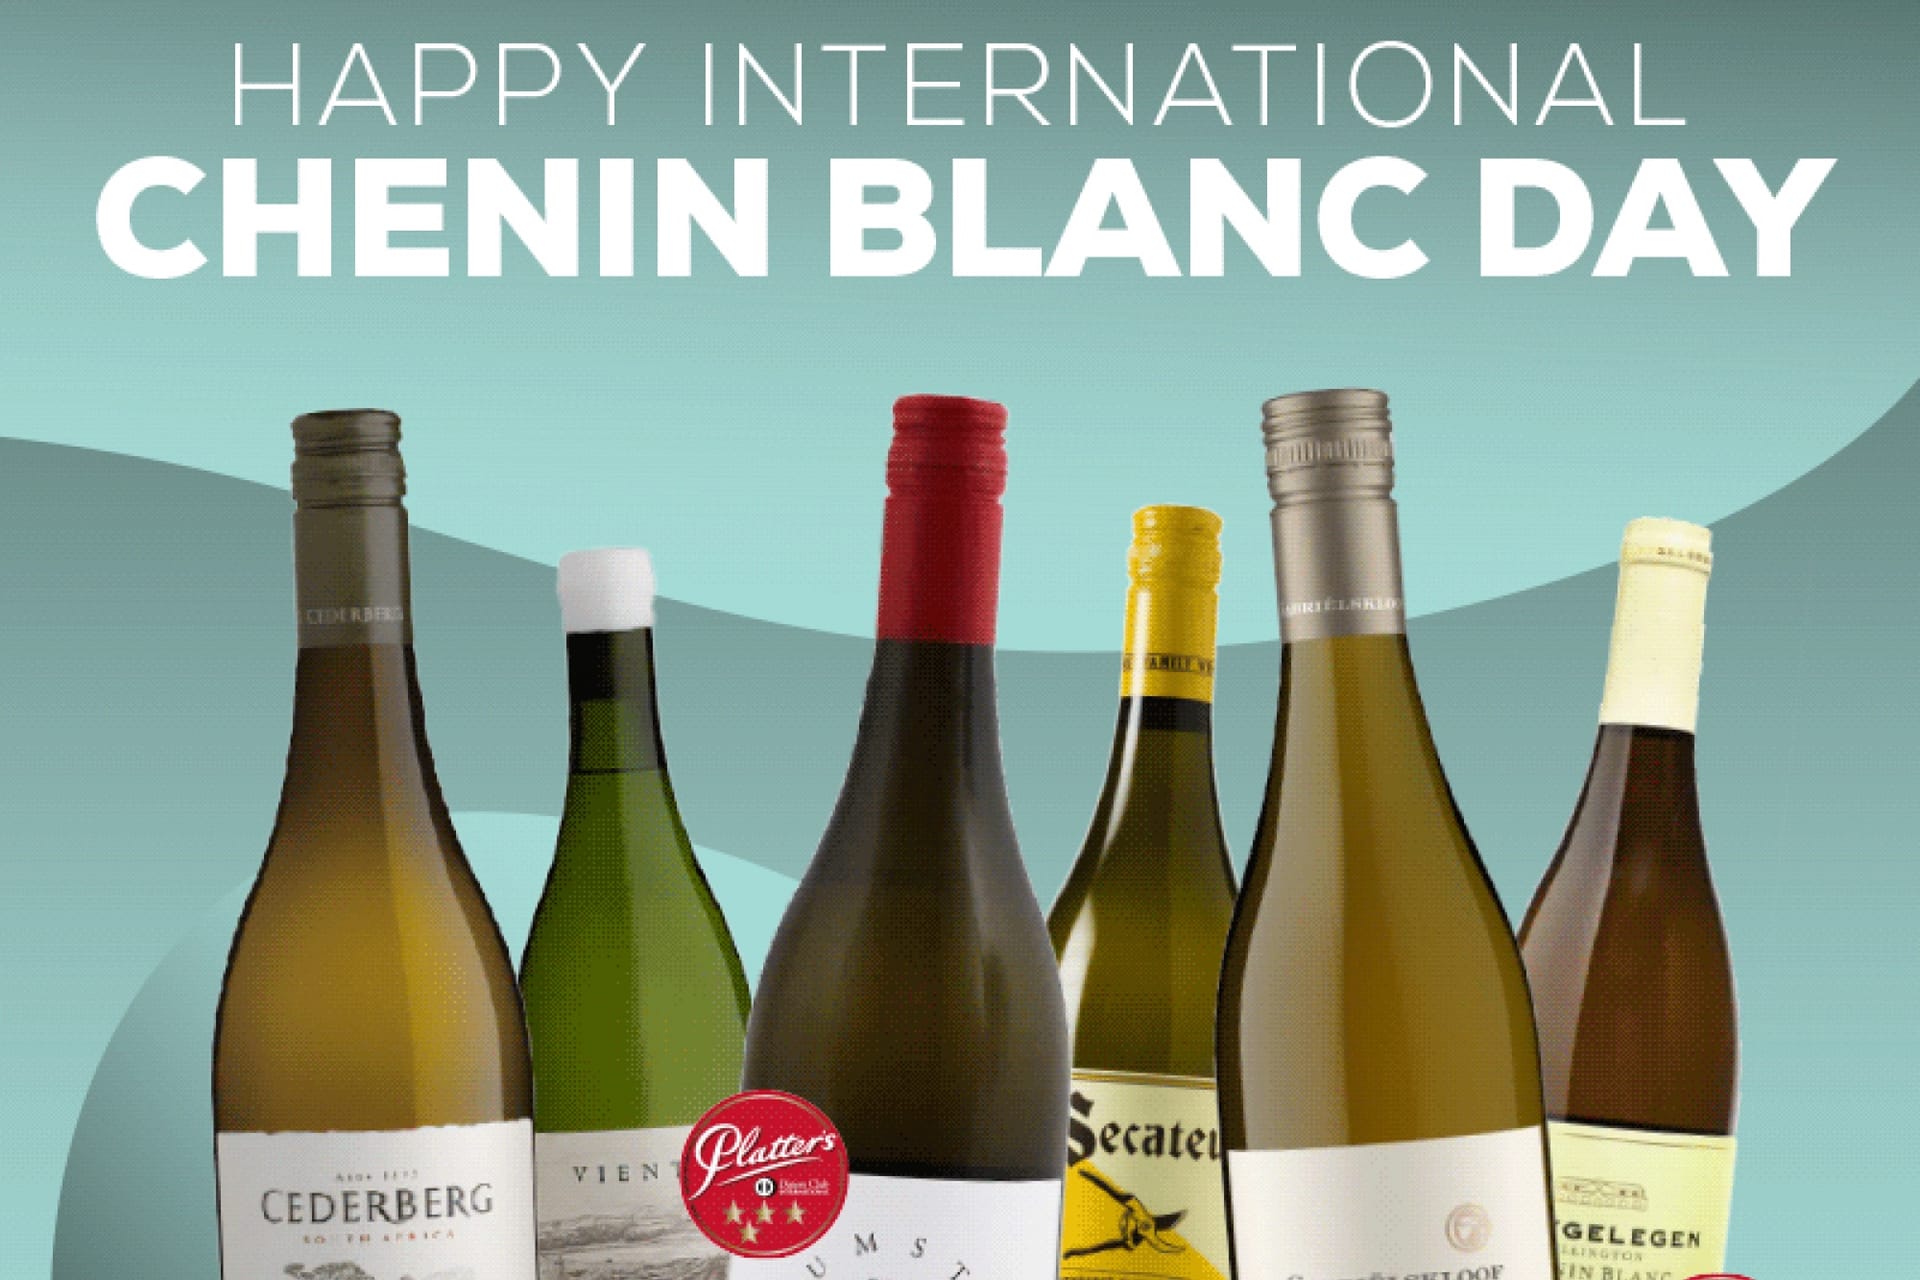 Celebrating Chenin Blanc Day!